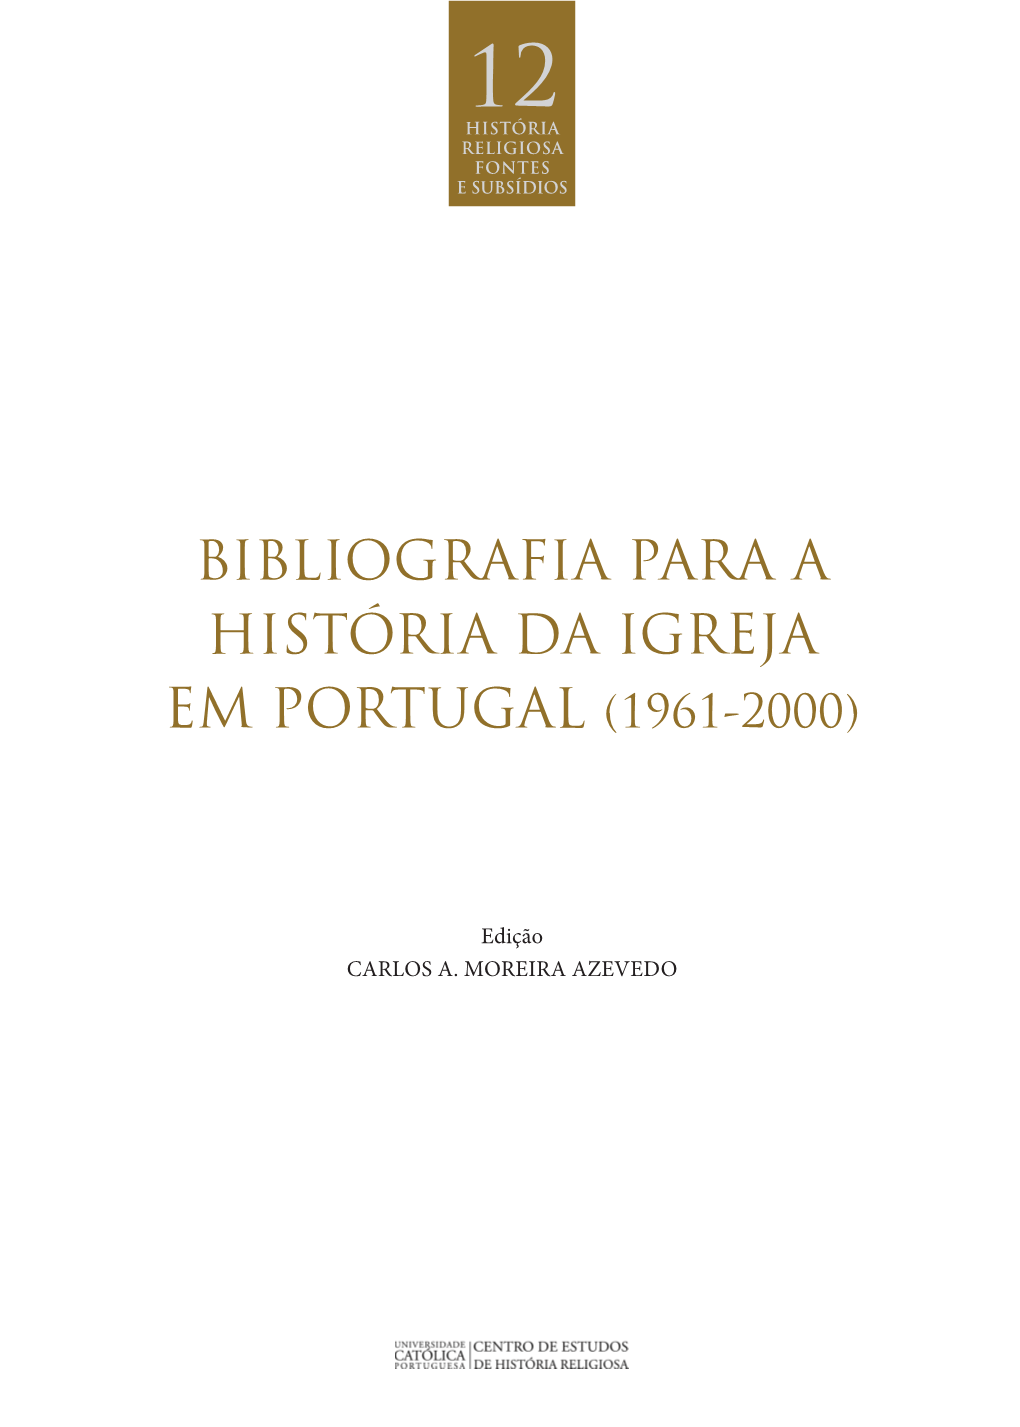 BIBLIOGRAFIA PARA a HISTÓRIA DA IGREJA Em Portugal (1961-2000)